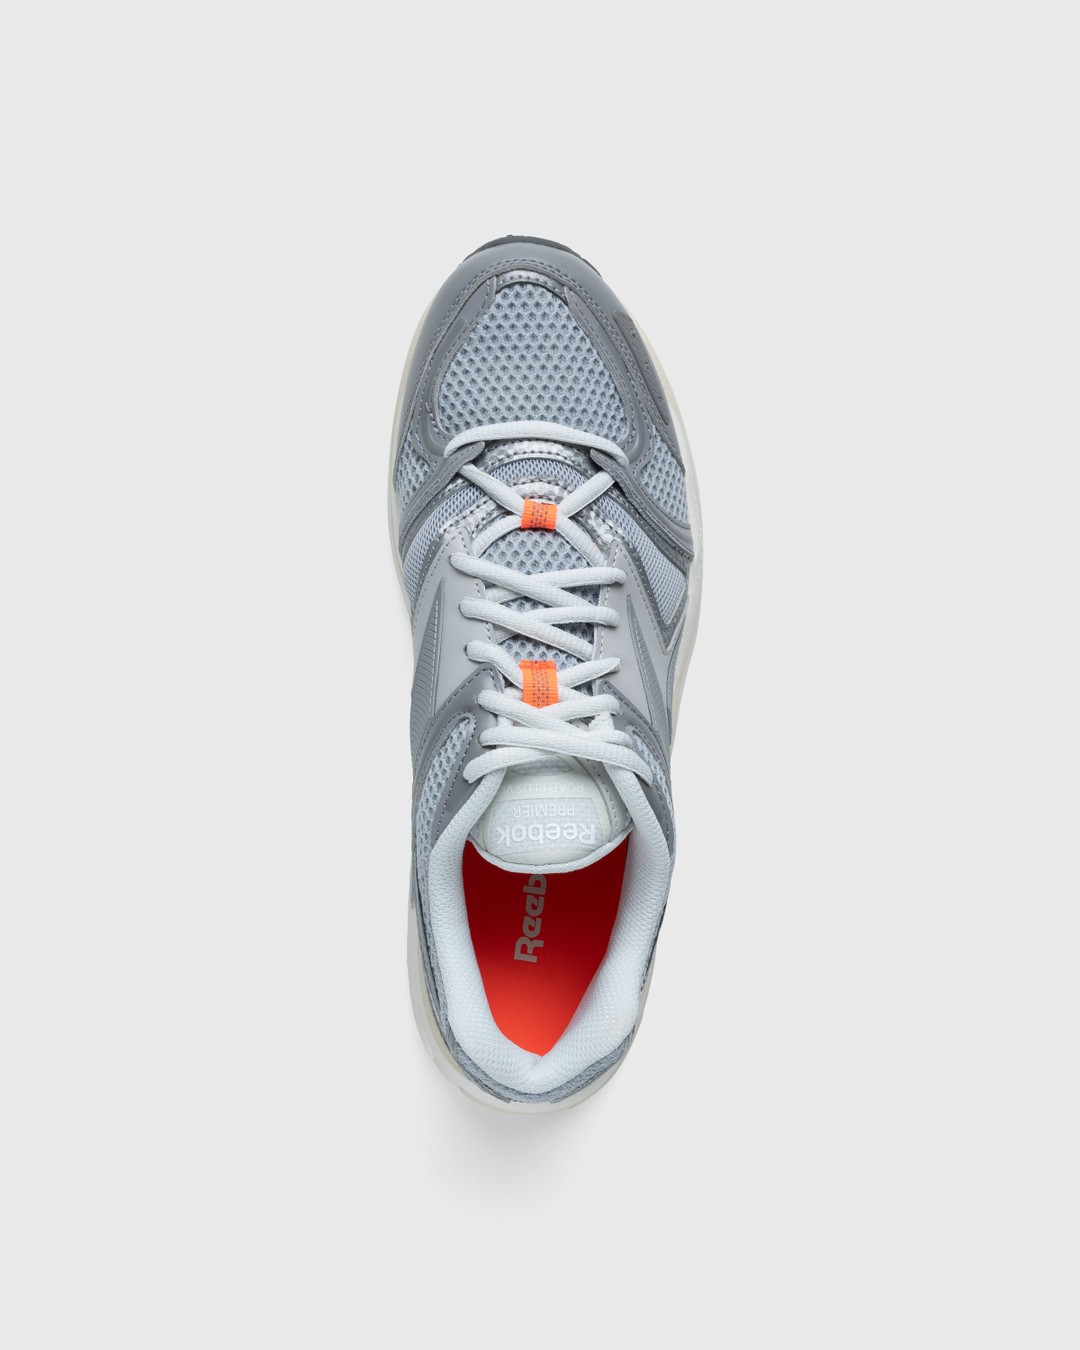 Reebok – Premier Road Plus VI Grey - Low Top Sneakers - Grey - Image 5